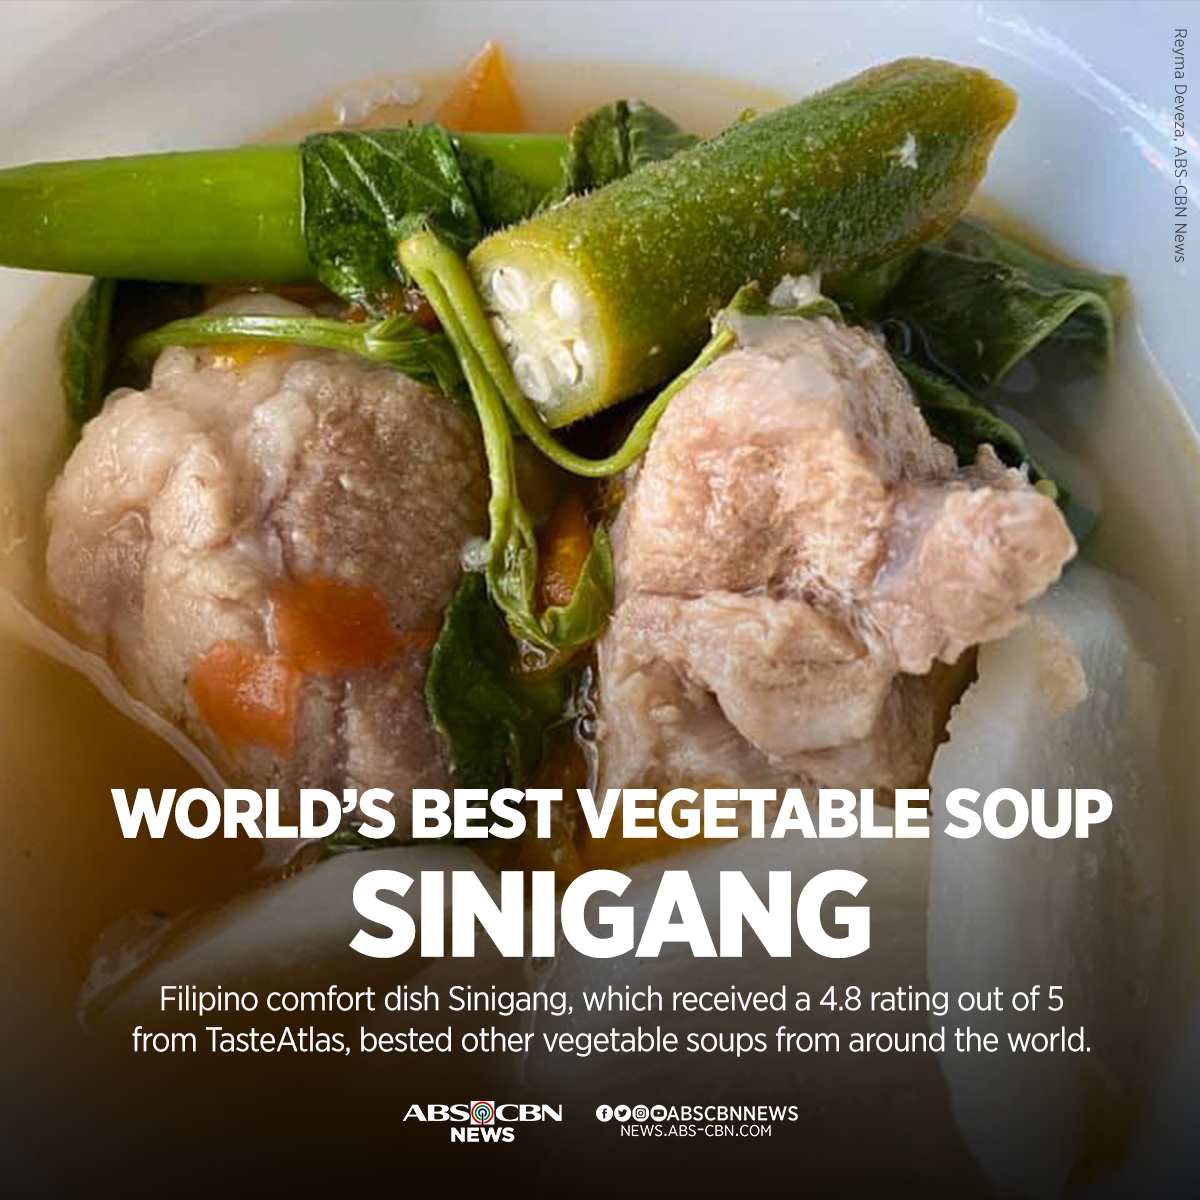 May asim pa! Hinirang na top-rated vegetable soup ng isang food website ang sinigang.

BASAHIN: bit.ly/3jfUOXw